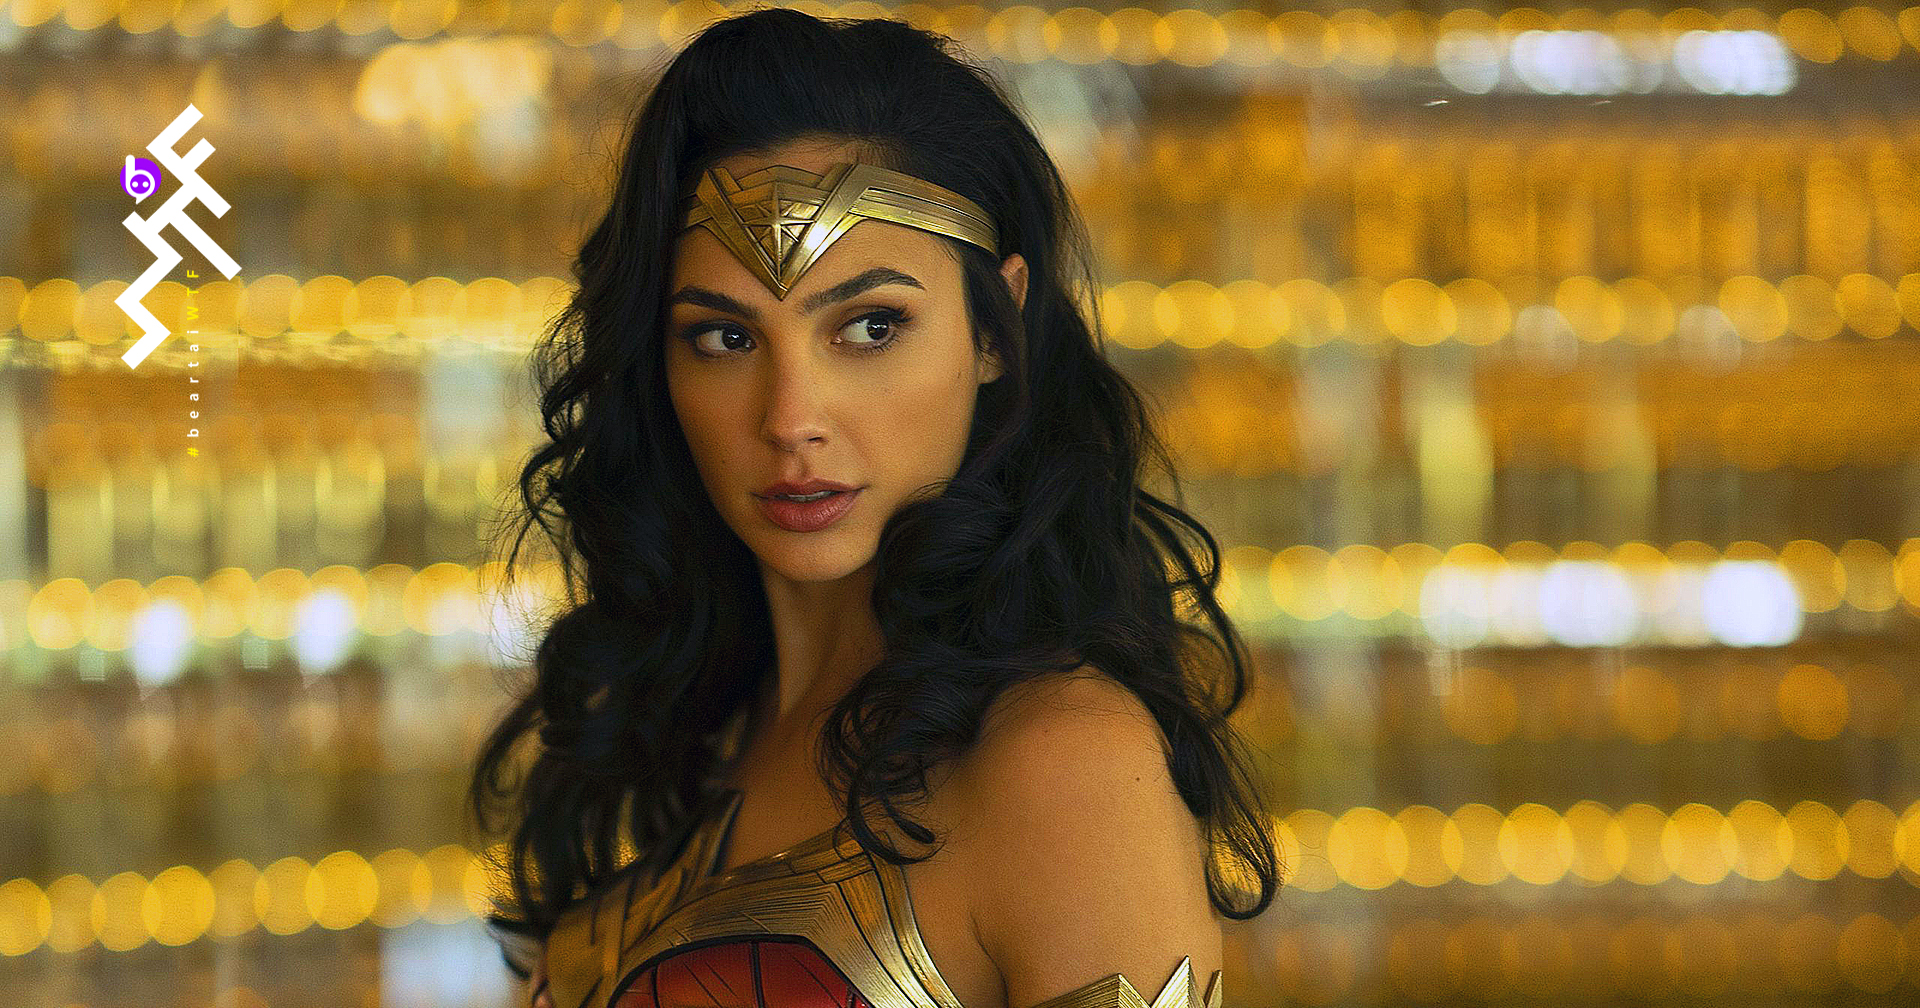 กัล กาด็อท ทำเงินก้าวกระโดด: ค่าตัวเพิ่มขึ้น 33 เท่า จากการรับบทนำใน Wonder Woman 1984